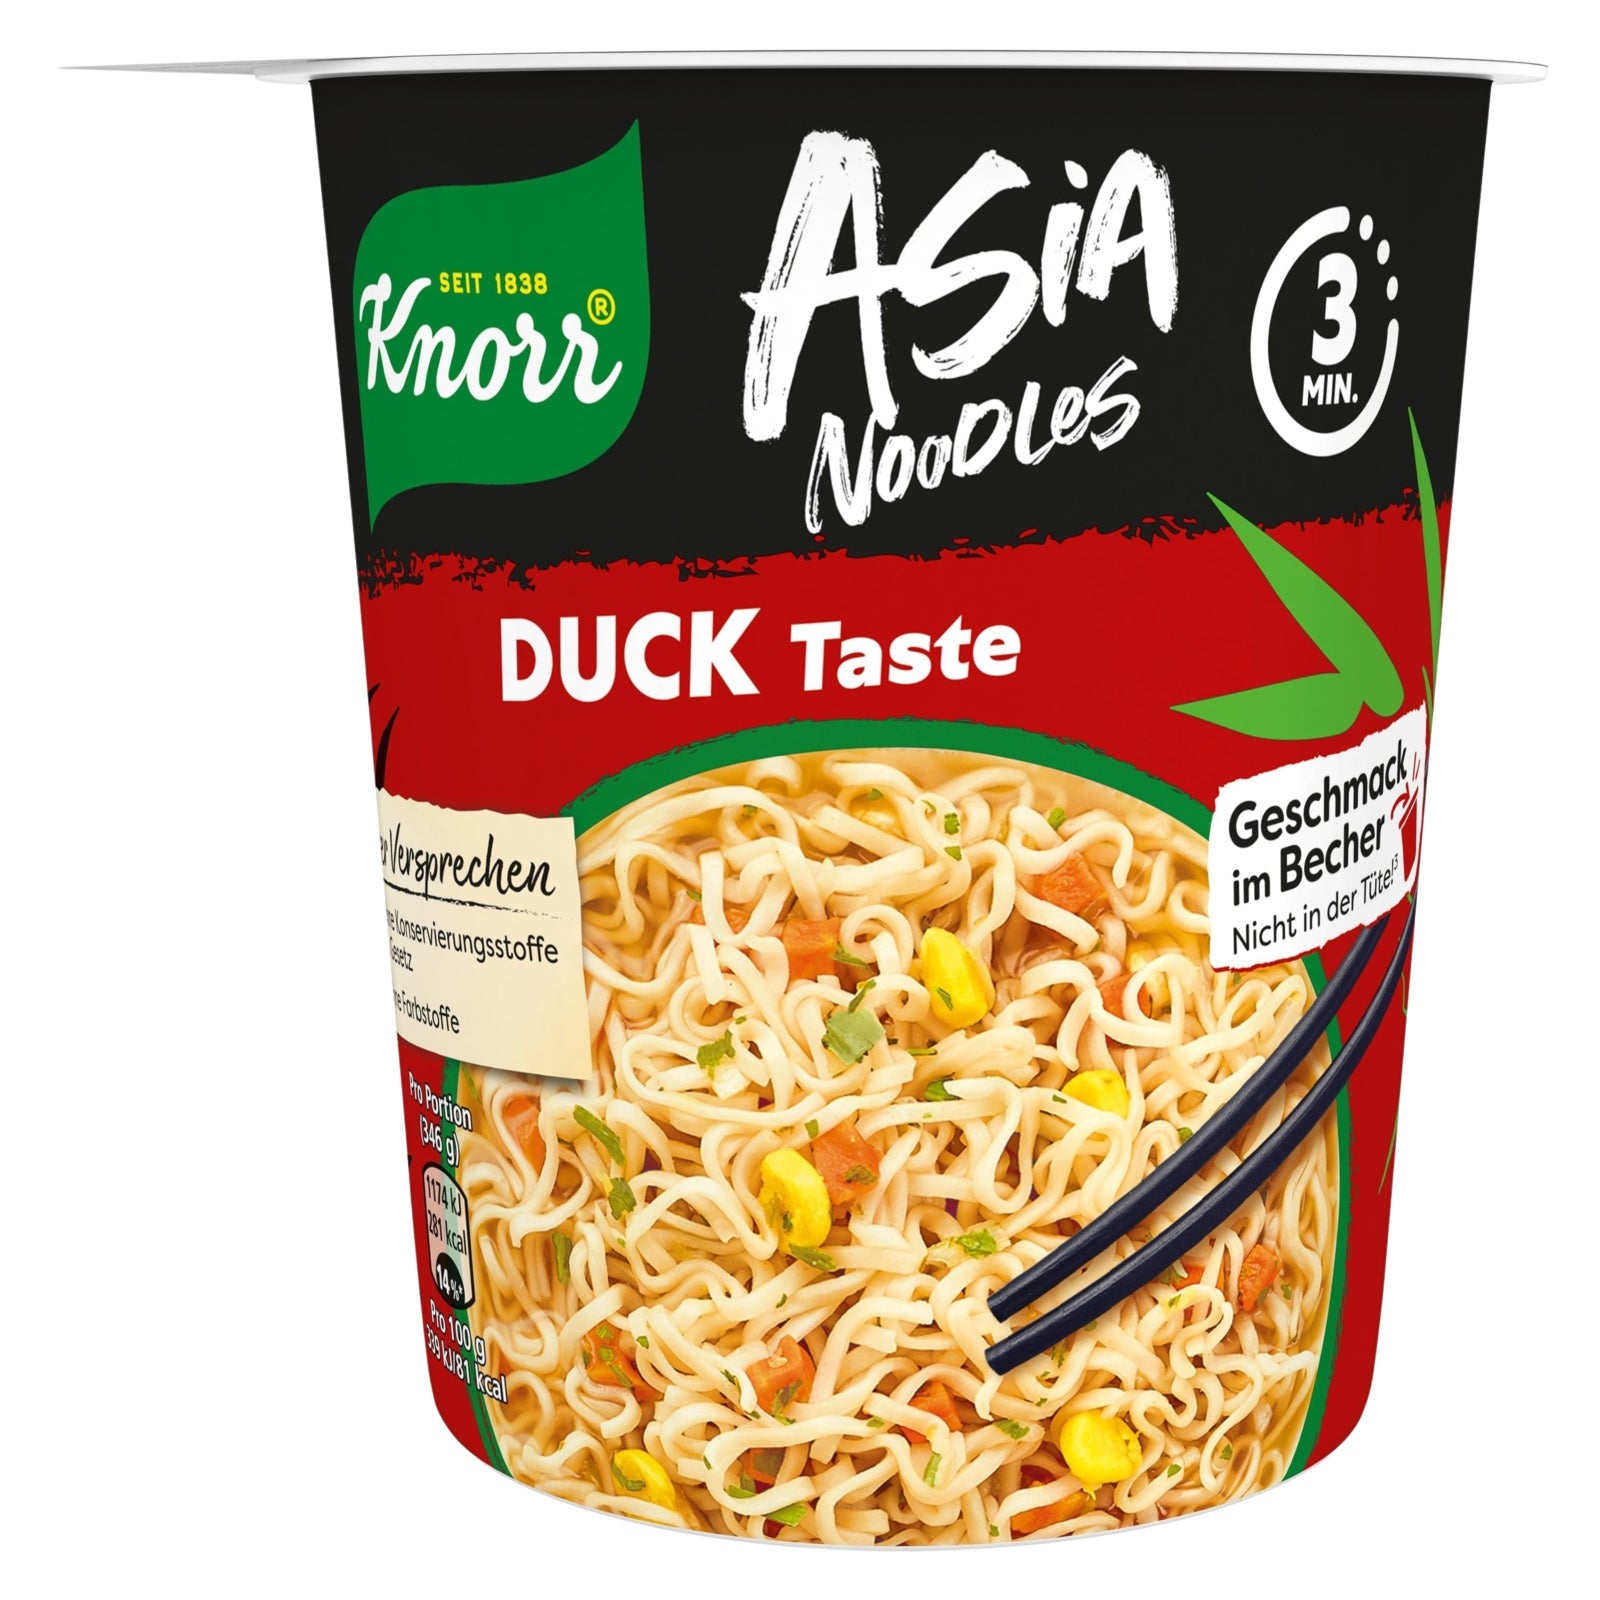 Knorr Asia Noodles Instant Nudeln Duck Taste schnelles Nudelgericht fertig in nur 3 Minuten